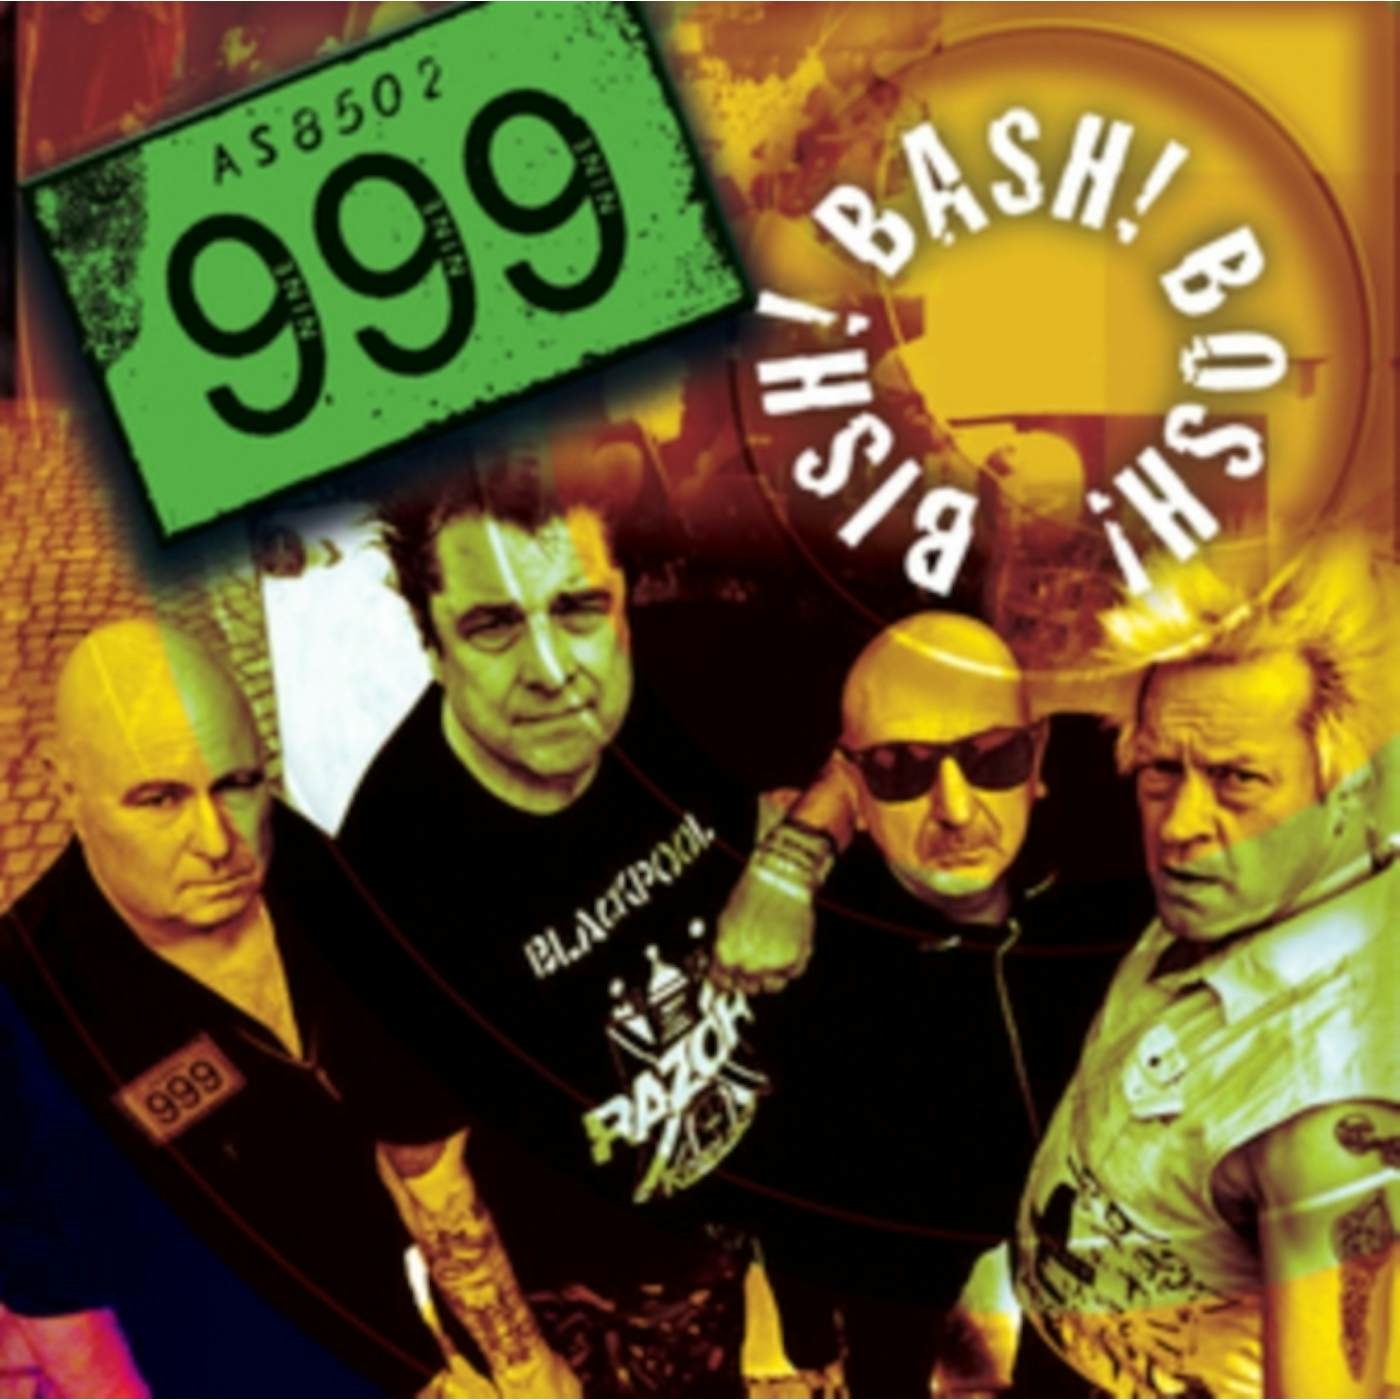 999 Bish! Bash! Bosh! Vinyl Record